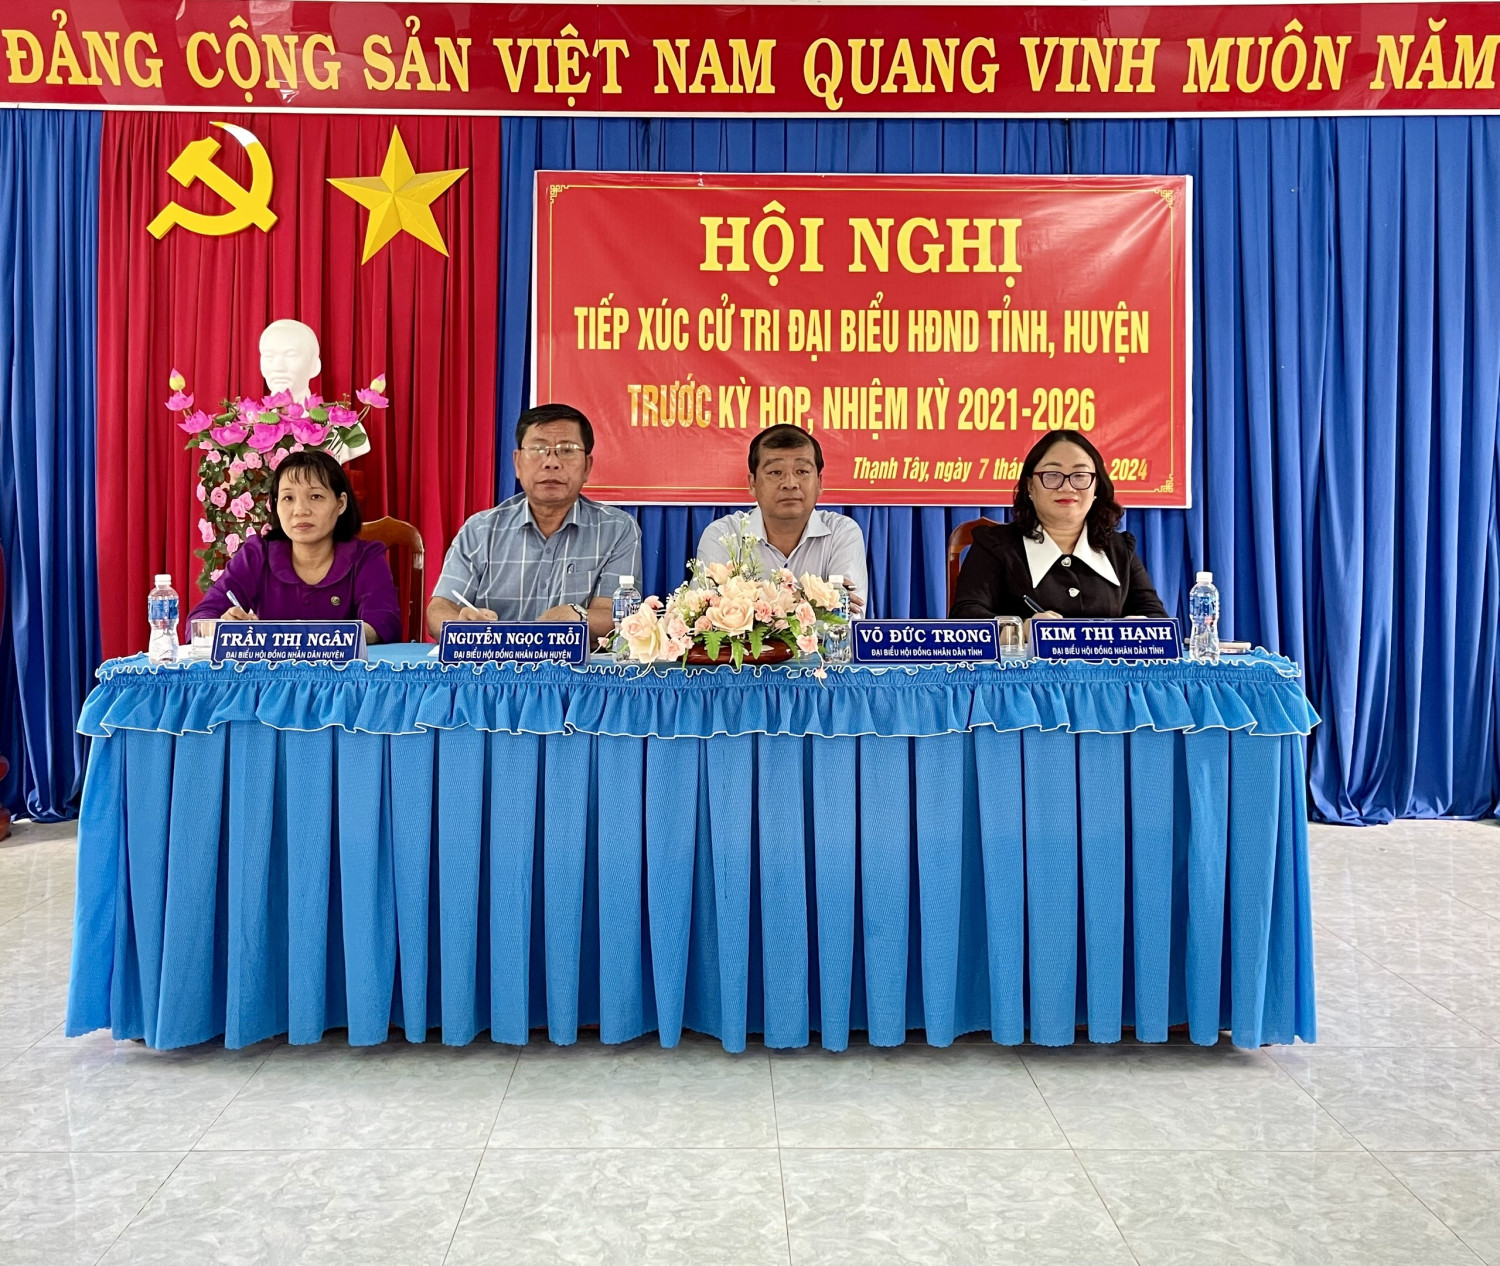 Đại biểu HĐND tỉnh, huyện Tiếp xúc cử tri xã Thạnh Tây huyện Tân Biên